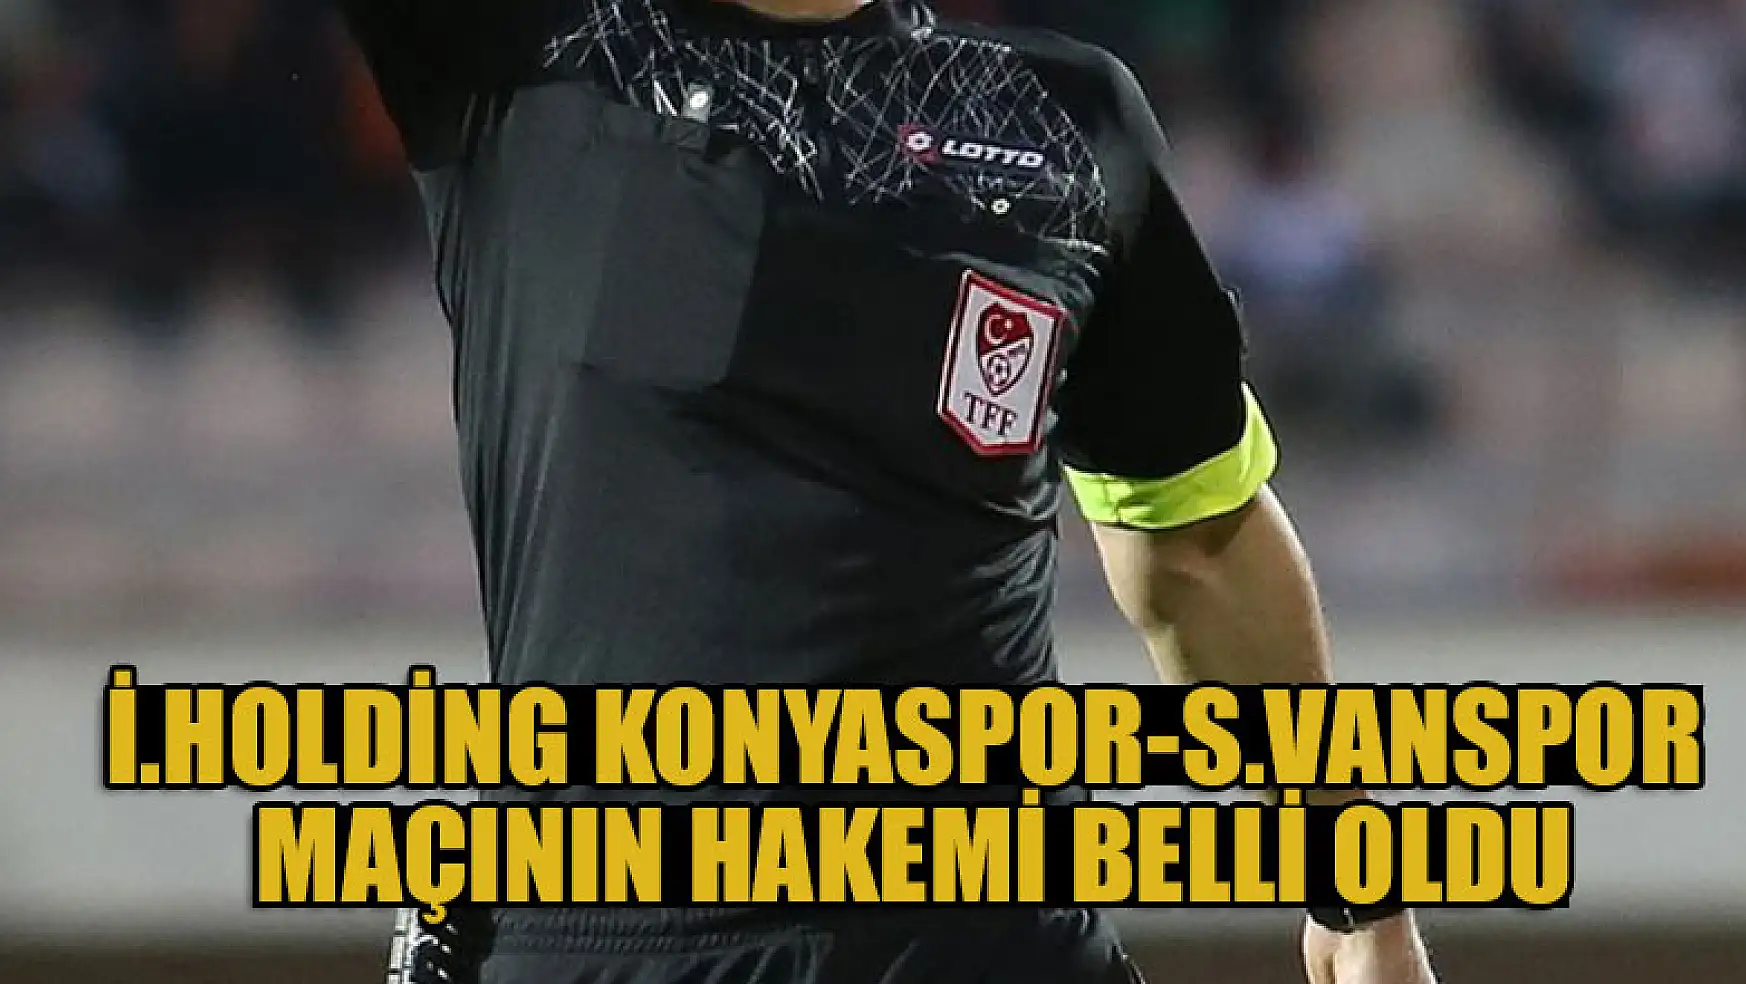 İttifak Holding Konyaspor-Silahtaroğlu Vanspor maçının hakemi belli oldu